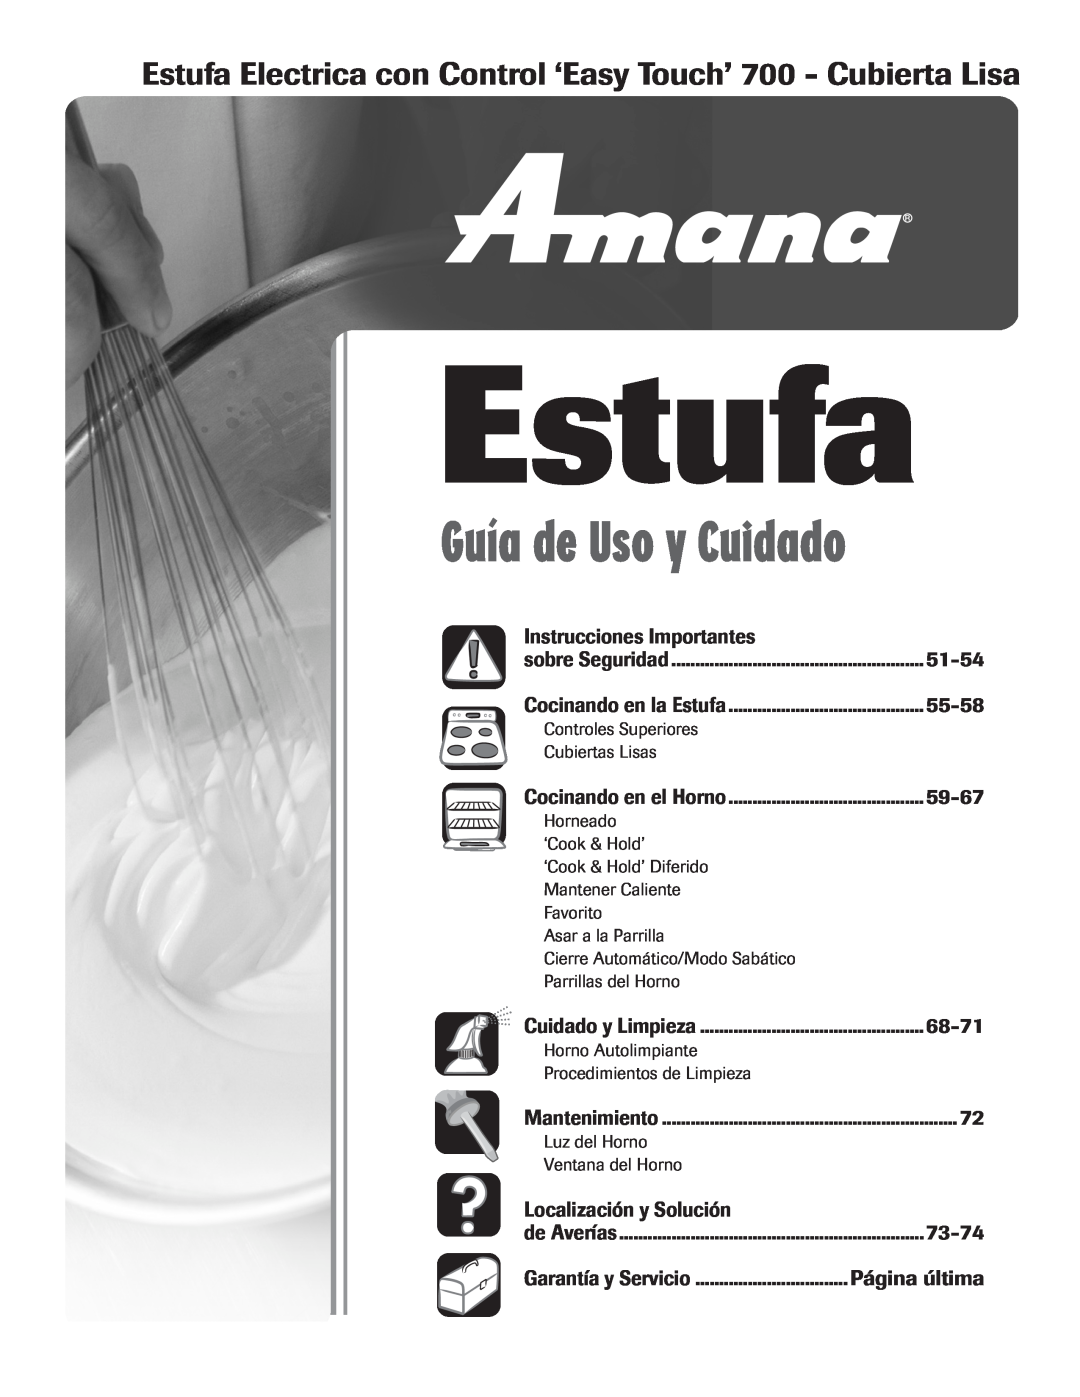 Amana 8113P598-60 Estufa Electrica con Control ‘Easy Touch’ 700 - Cubierta Lisa, Instrucciones Importantes, 51-54 